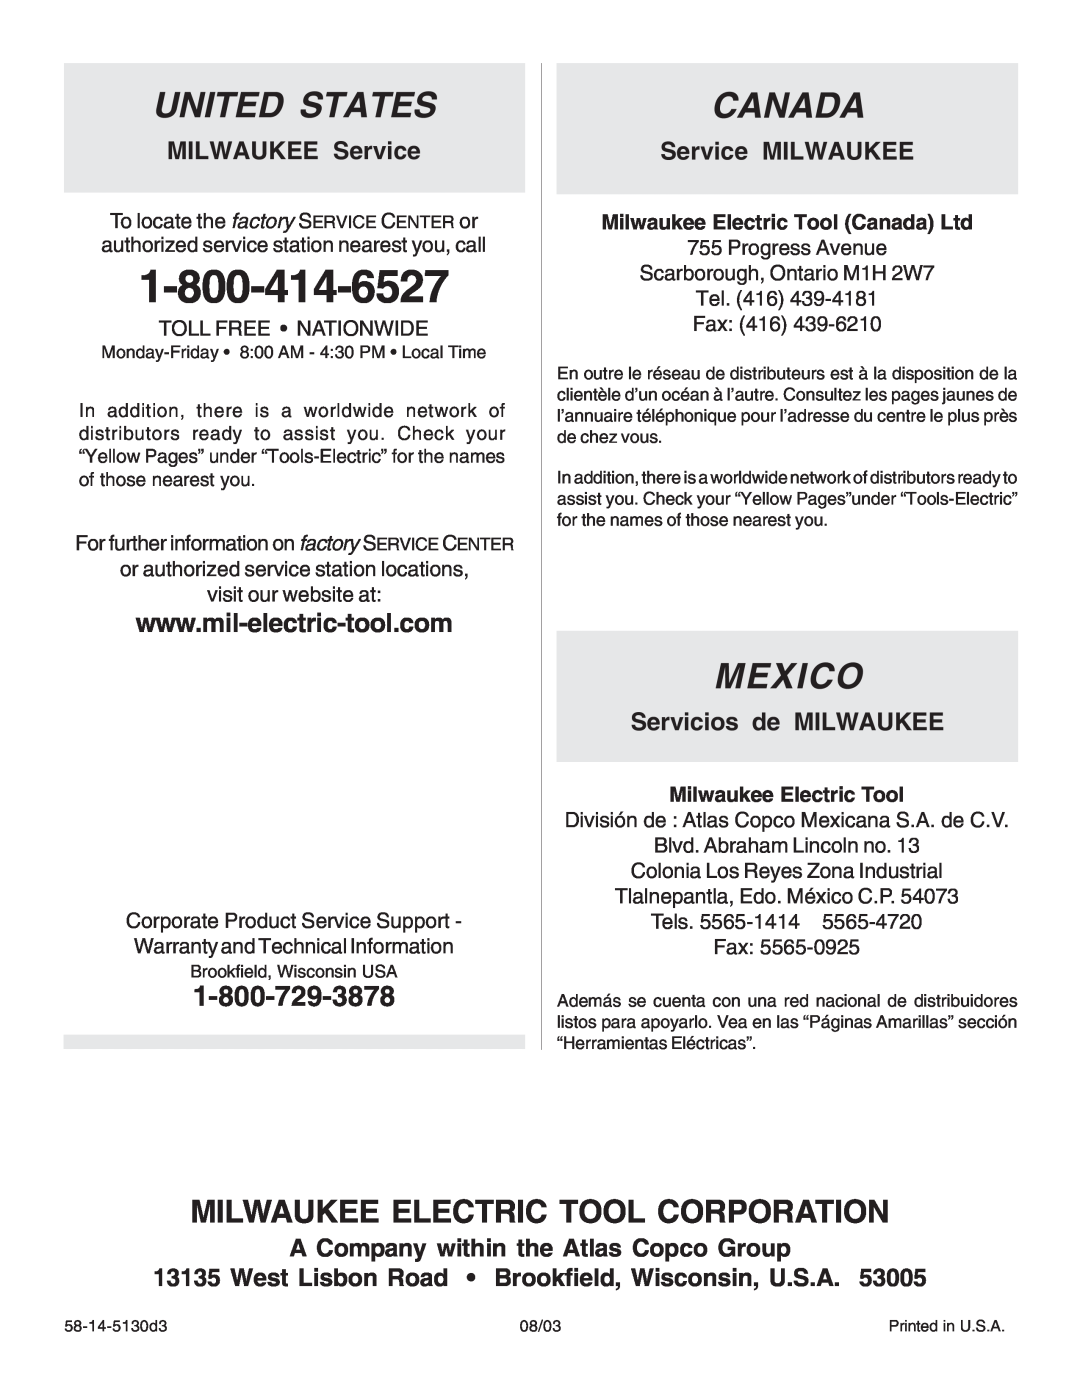 Intec 8940-20 MILWAUKEE Service, Service MILWAUKEE, Servicios de MILWAUKEE, A Company within the Atlas Copco Group, Canada 